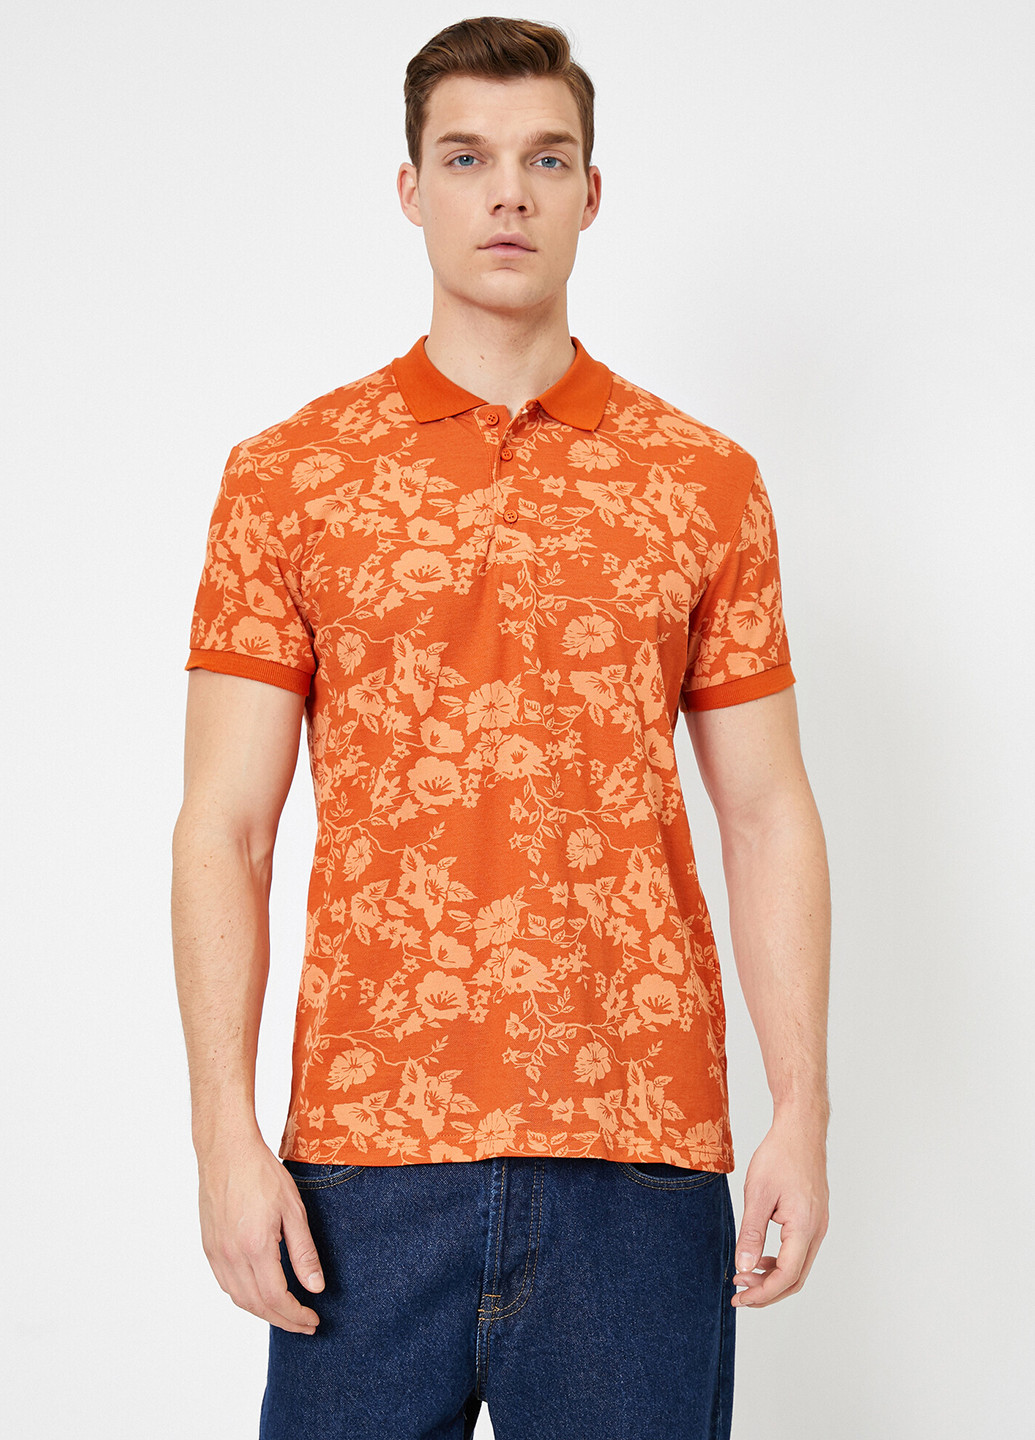 Оранжевая футболка-поло для мужчин KOTON с цветочным принтом